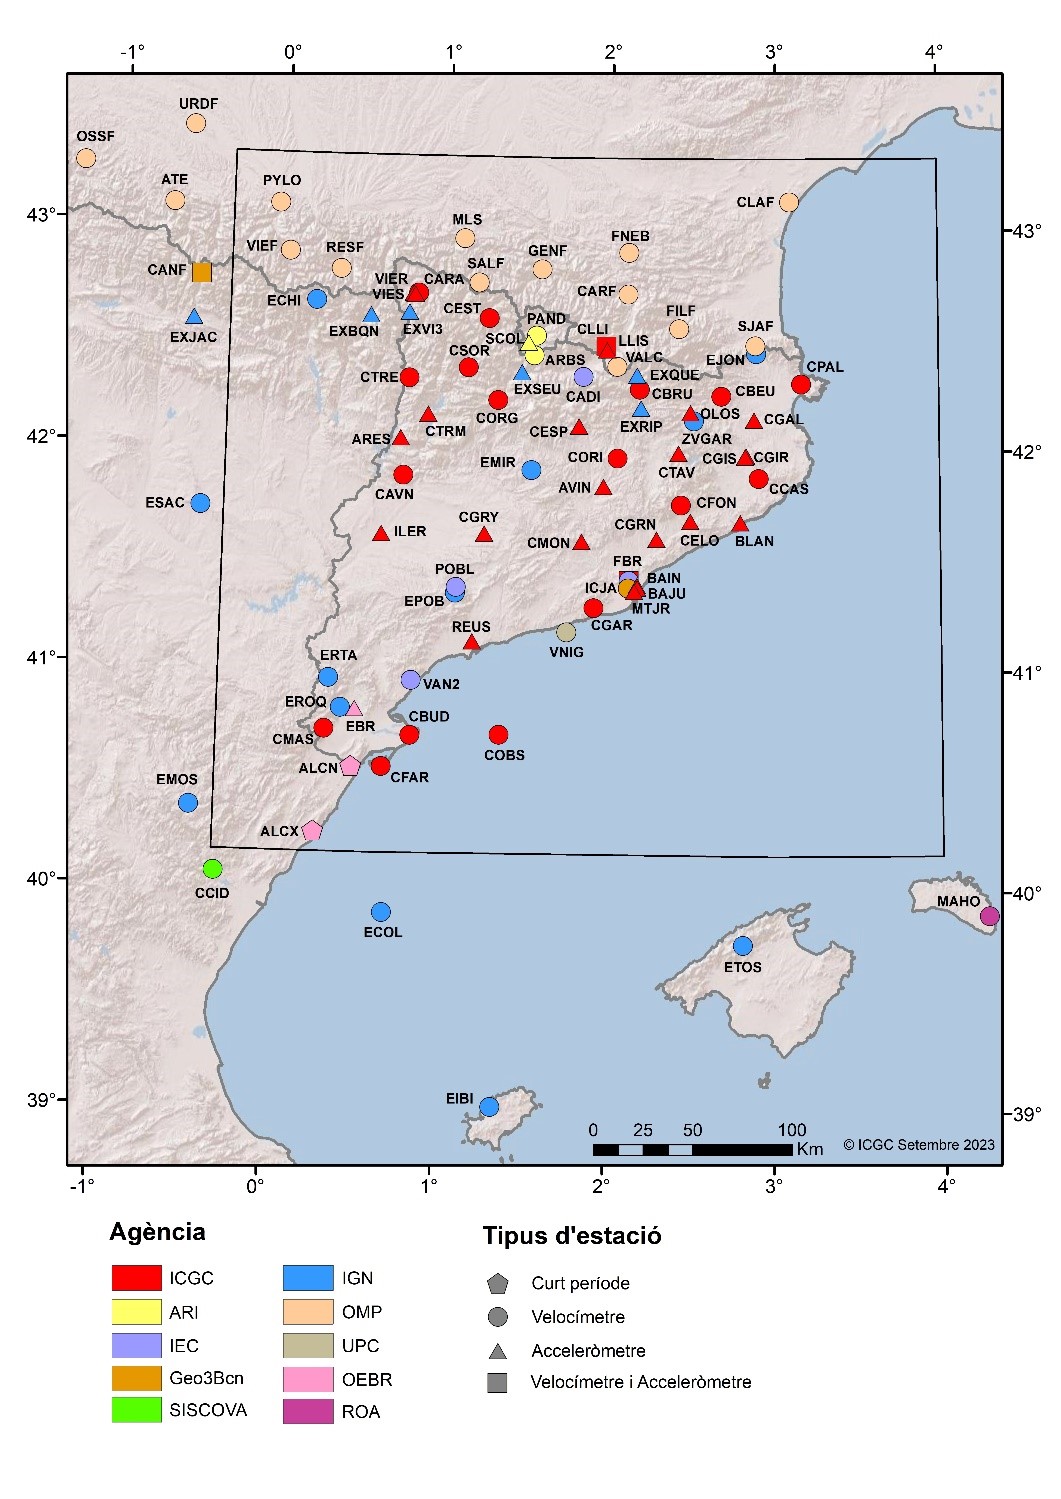 Estacions que conformen la Xarxa sísmica de Catalunya, utilitzades per l’ICGC per al monitoreig de la sismicitat del territori. En vermell, les que son propietat de l’ICGC.